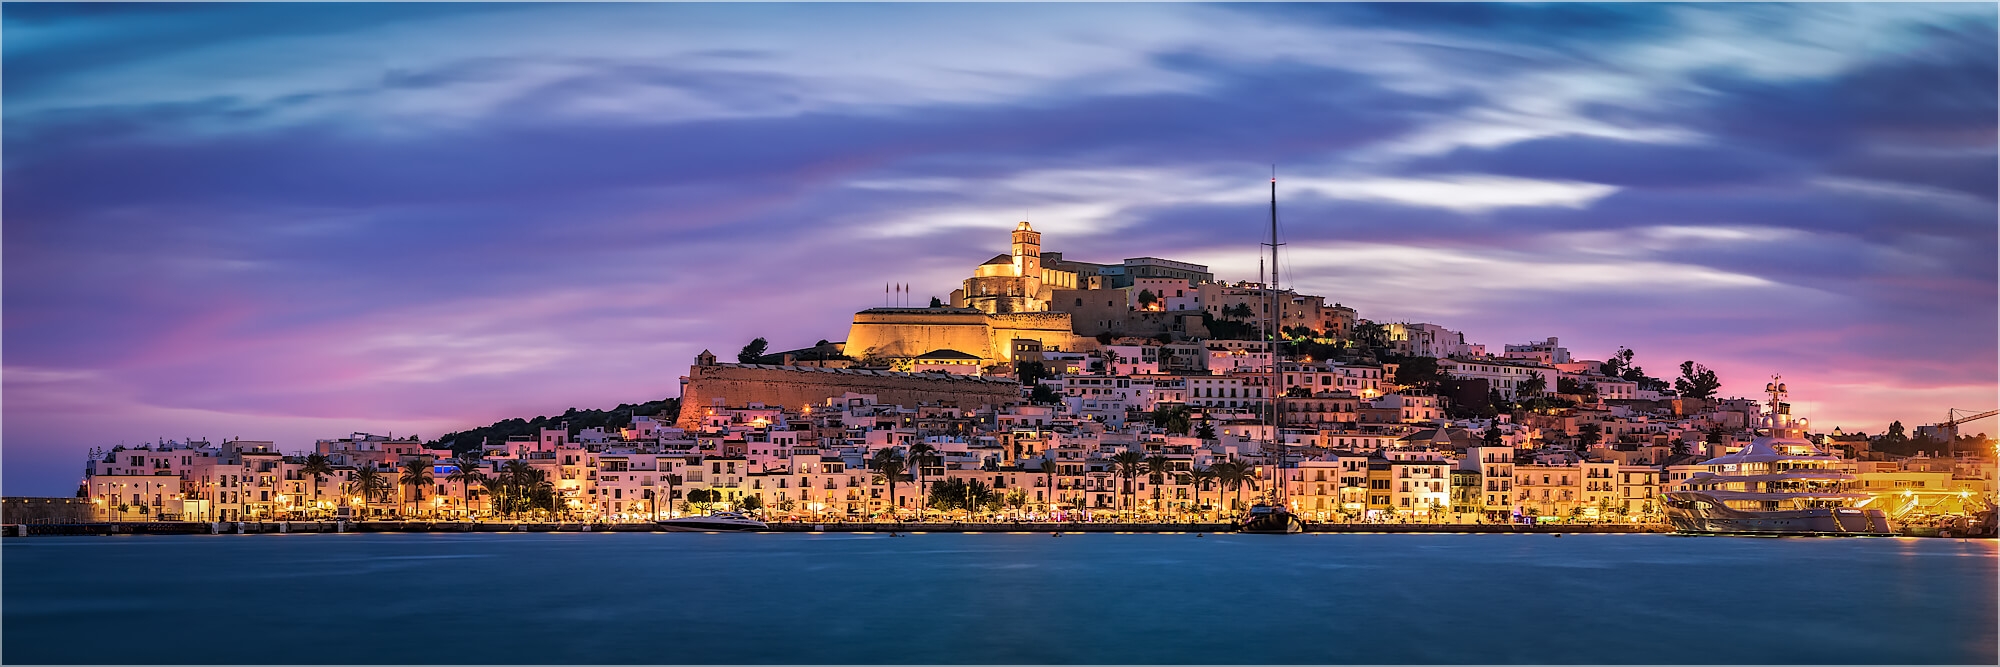 Panoramabild Spanien Ibiza Burg und Altstadt